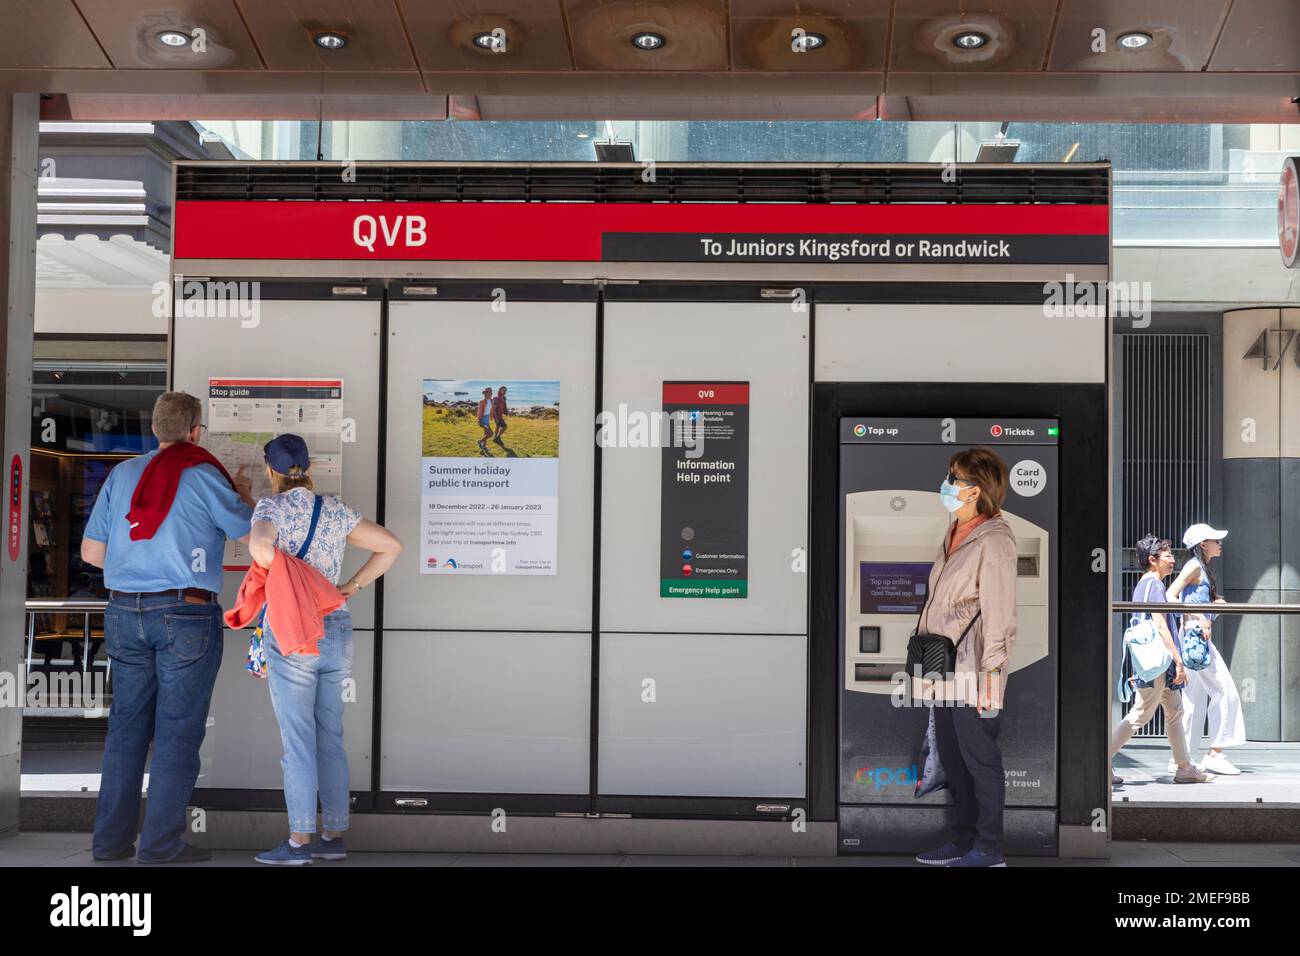 Transports en train léger à Sydney, station de métro léger QVB sur George Street, les navetteurs vérifient l'horaire du masque Covid de la rame, Sydney, Nouvelle-Galles du Sud, Australie Banque D'Images